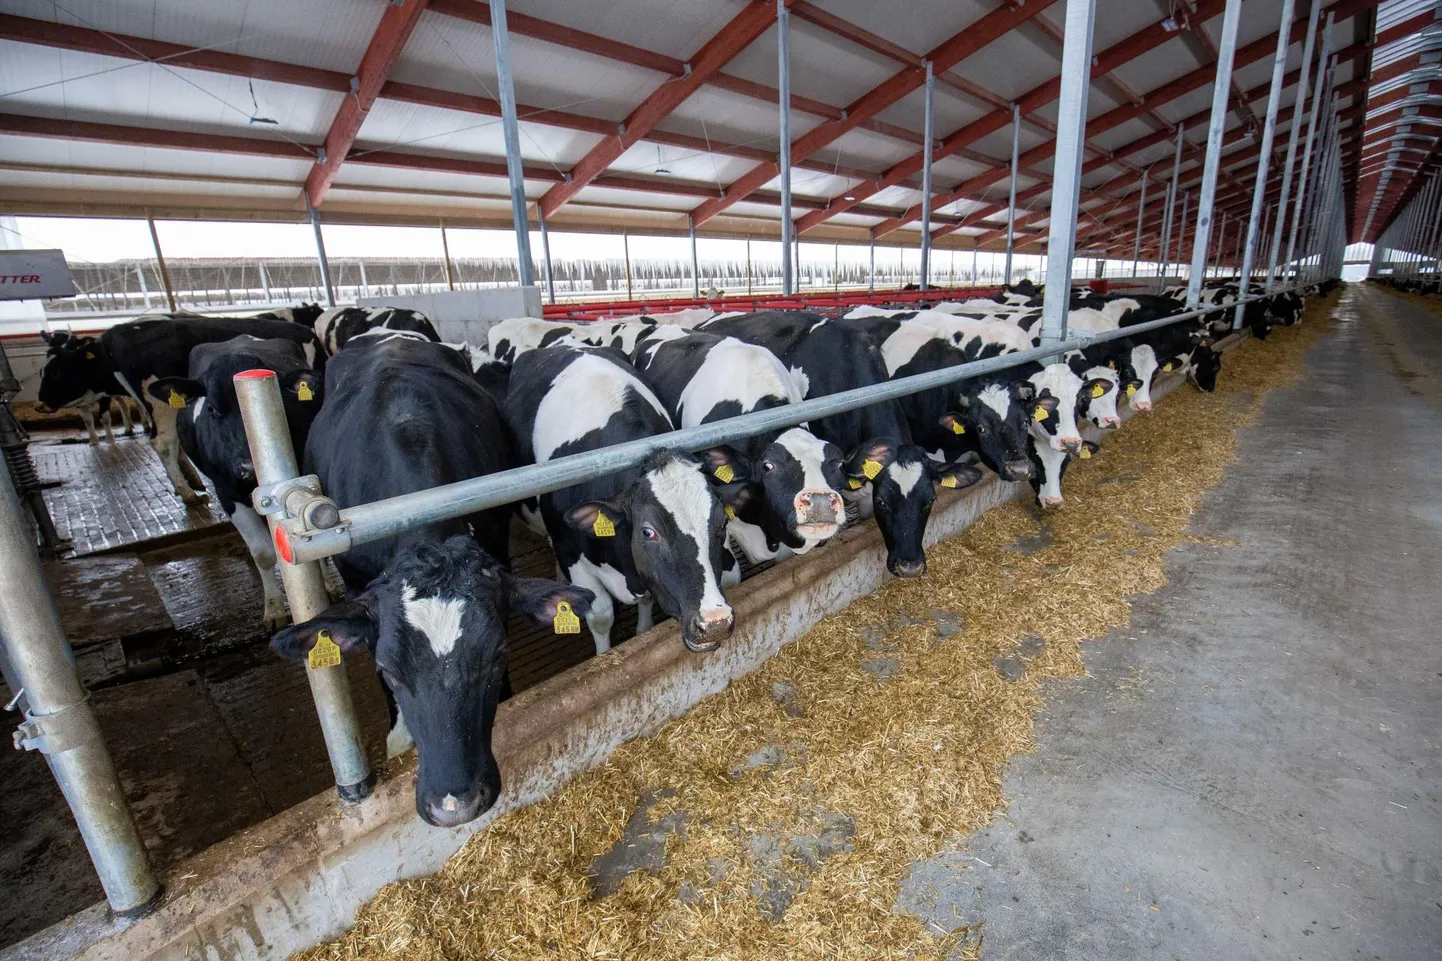 Lehmadele on heaks piimatootmiseks vaja värsket õhku, kuiva aset ja head sööta. Seda kõike ja veelgi enam saavad 1038 lehma vast avatud Väätsa kolmandas laudas.